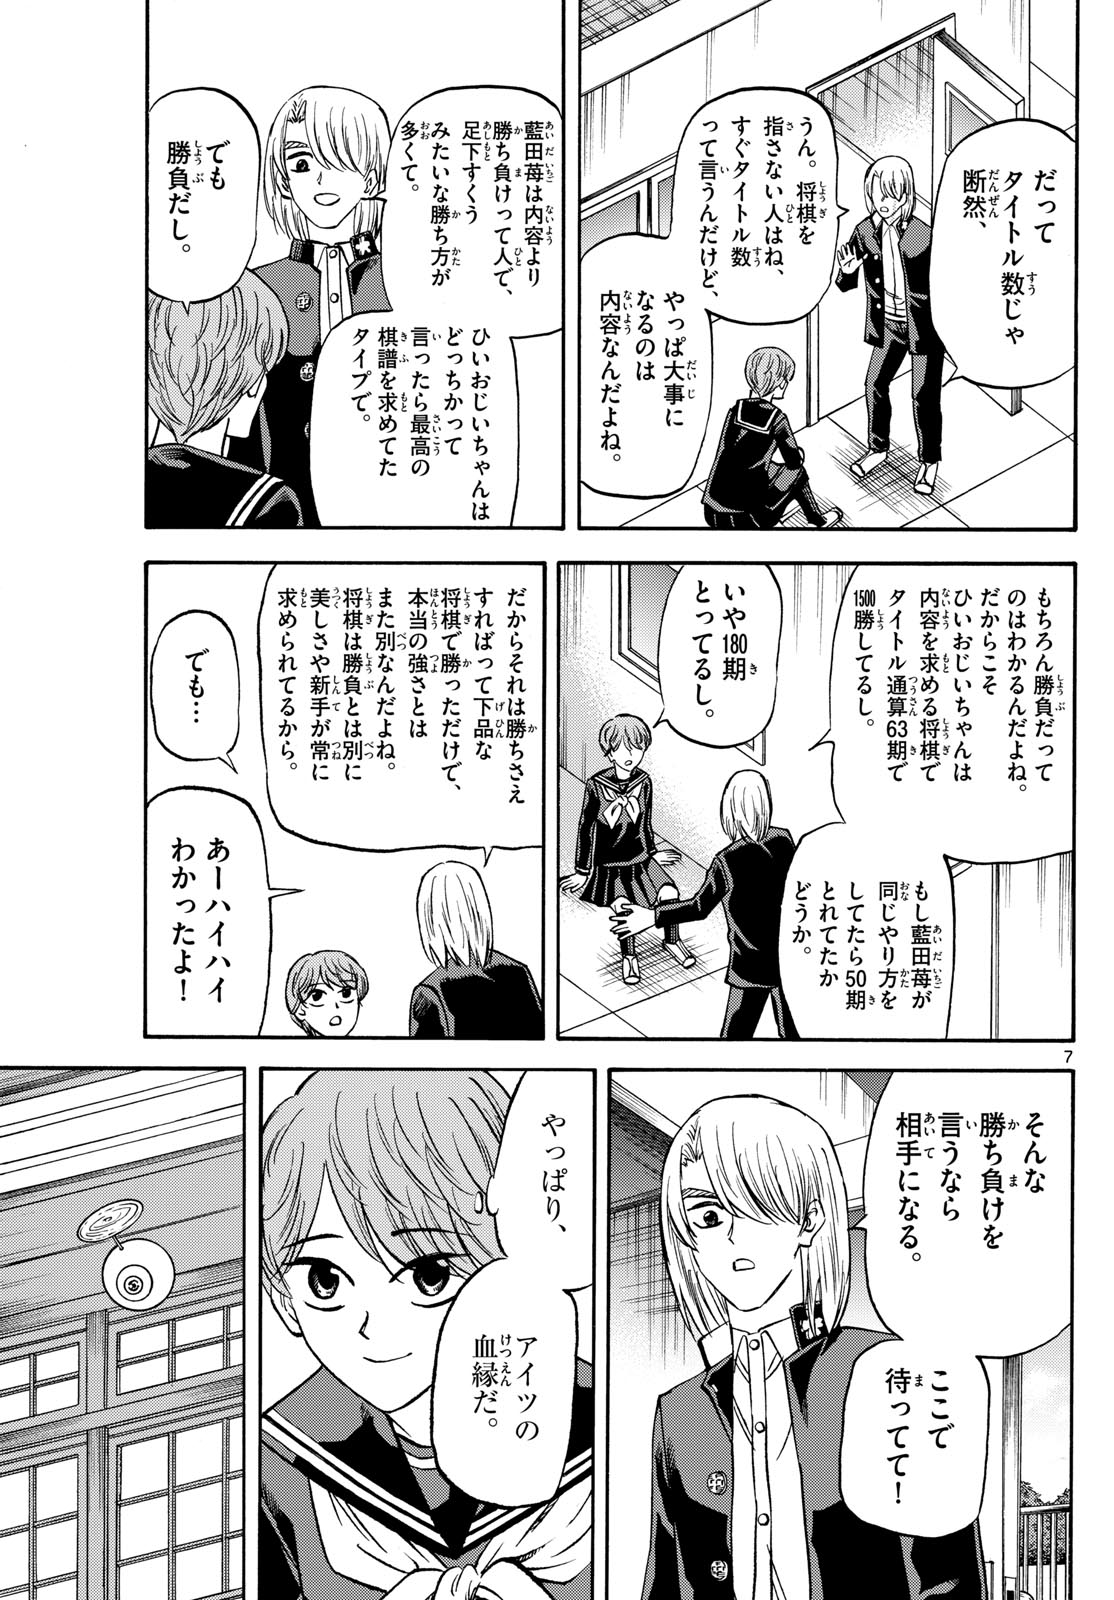 Tatsu to Ichigo - Chapter 187 - Page 7